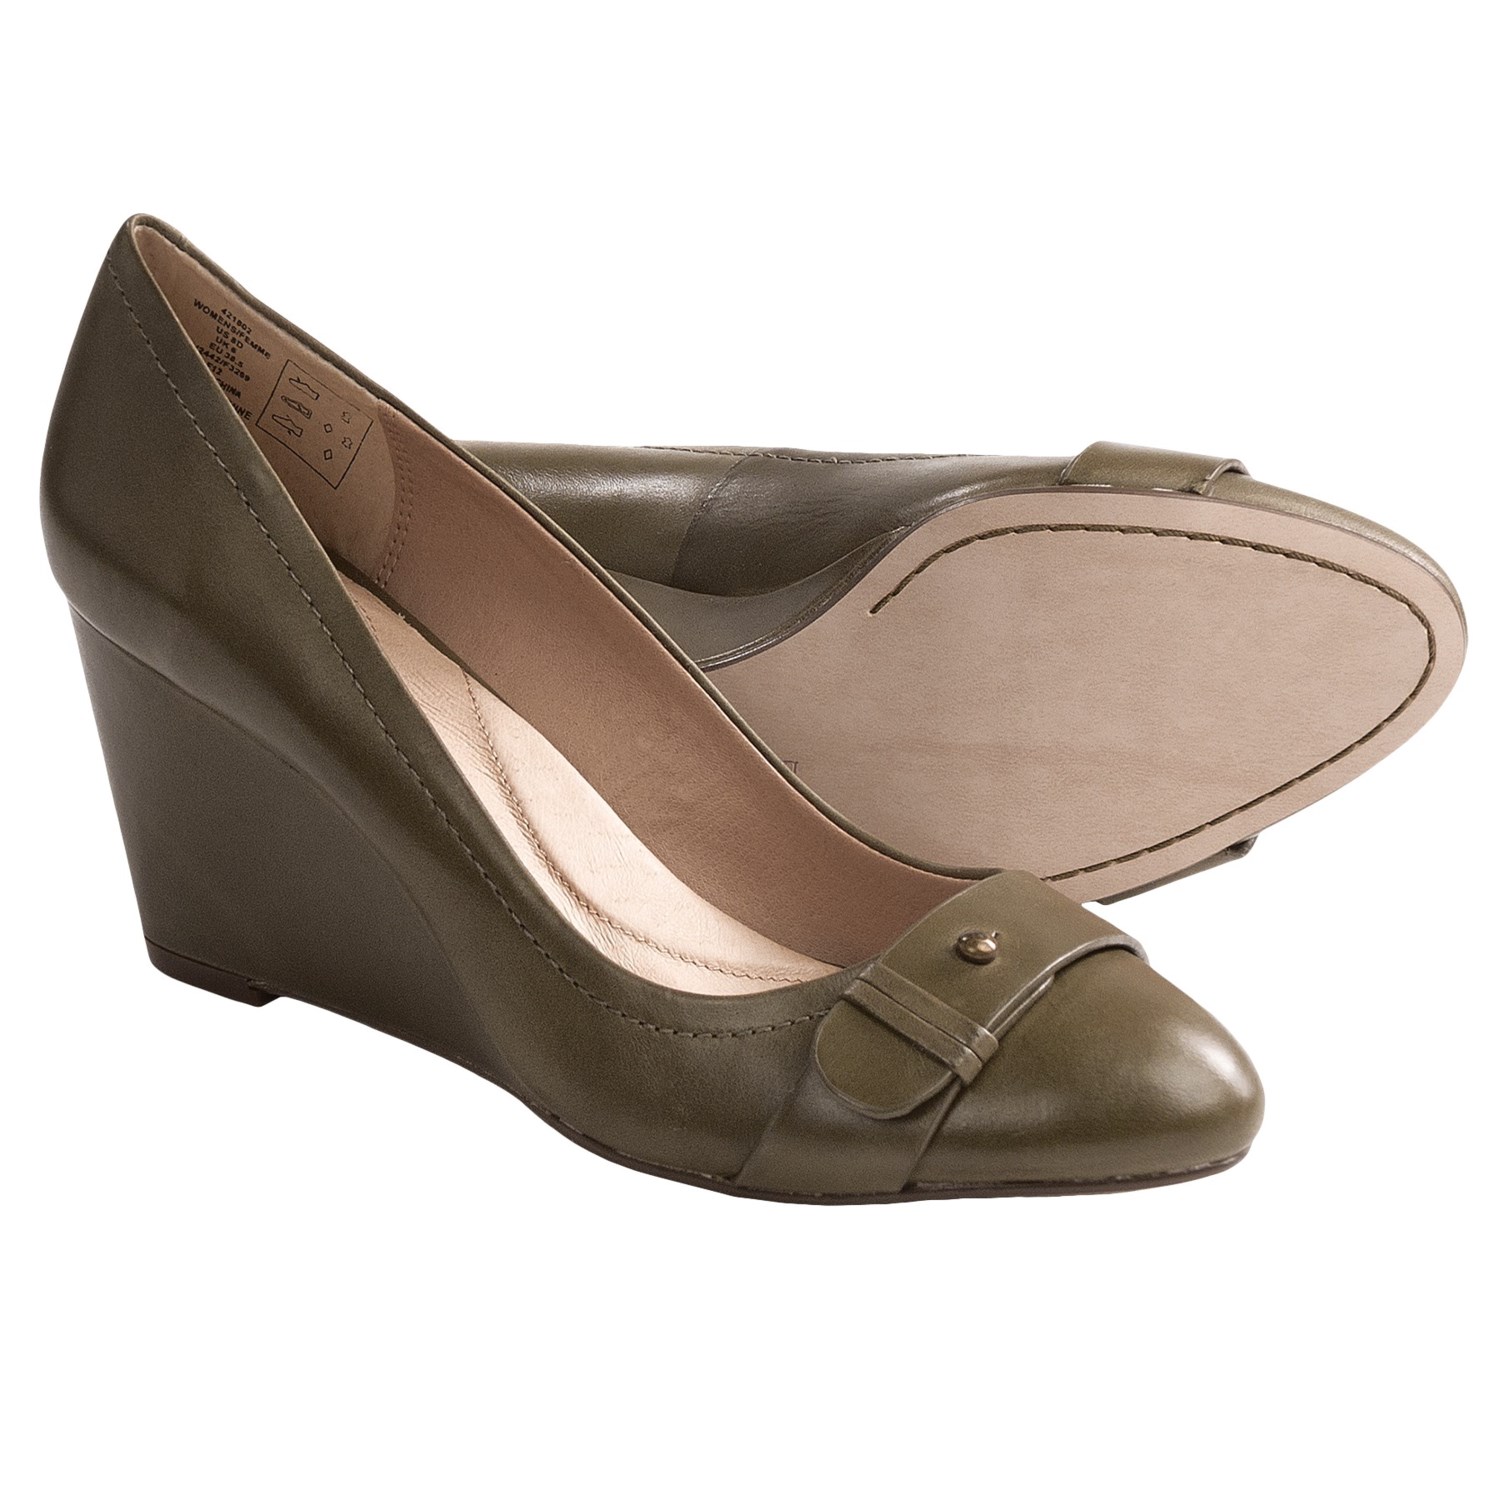 Landsâ€™ End Ellery Wedge Shoes - Leather (For Women) in Antique Olive